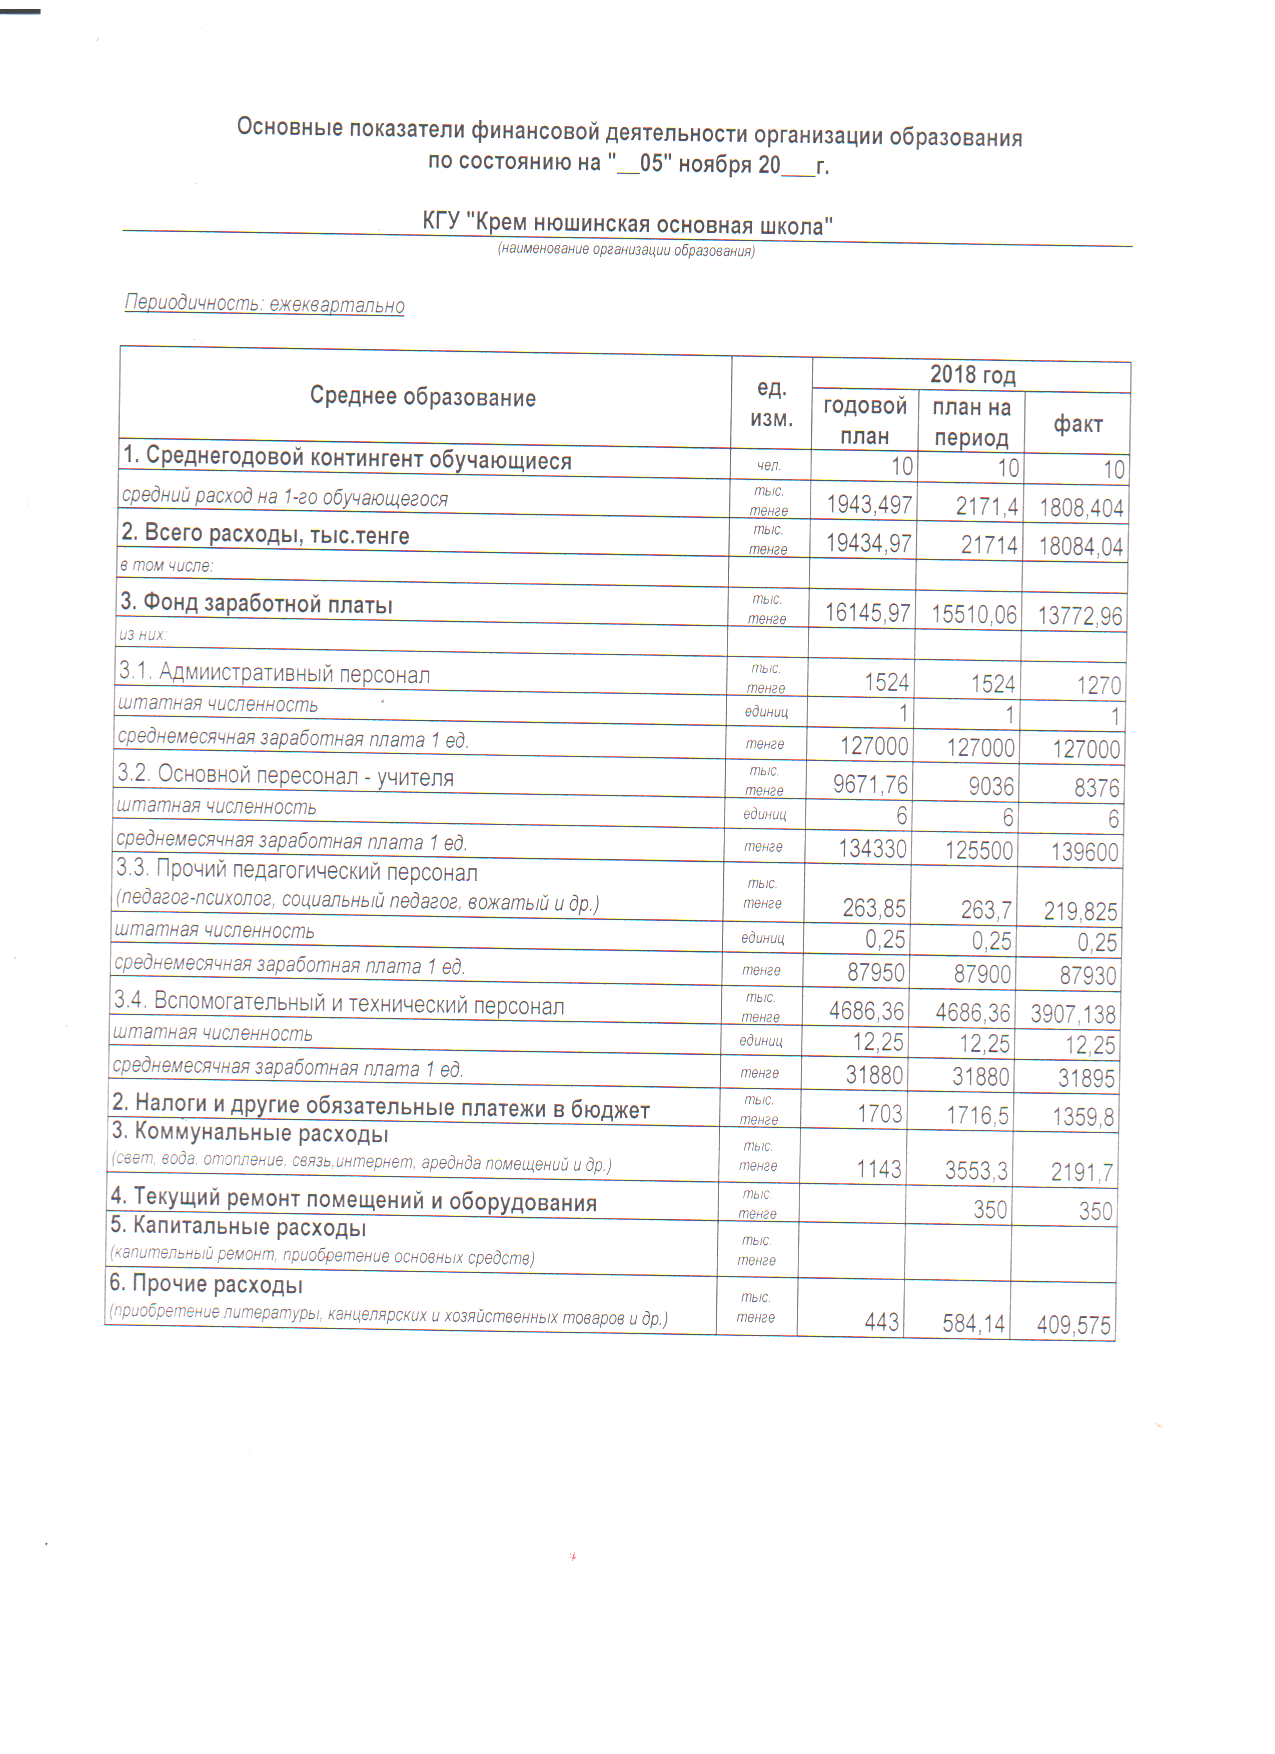 Main indicators of financial activity КГУ "Кремнюшинская основная школа"